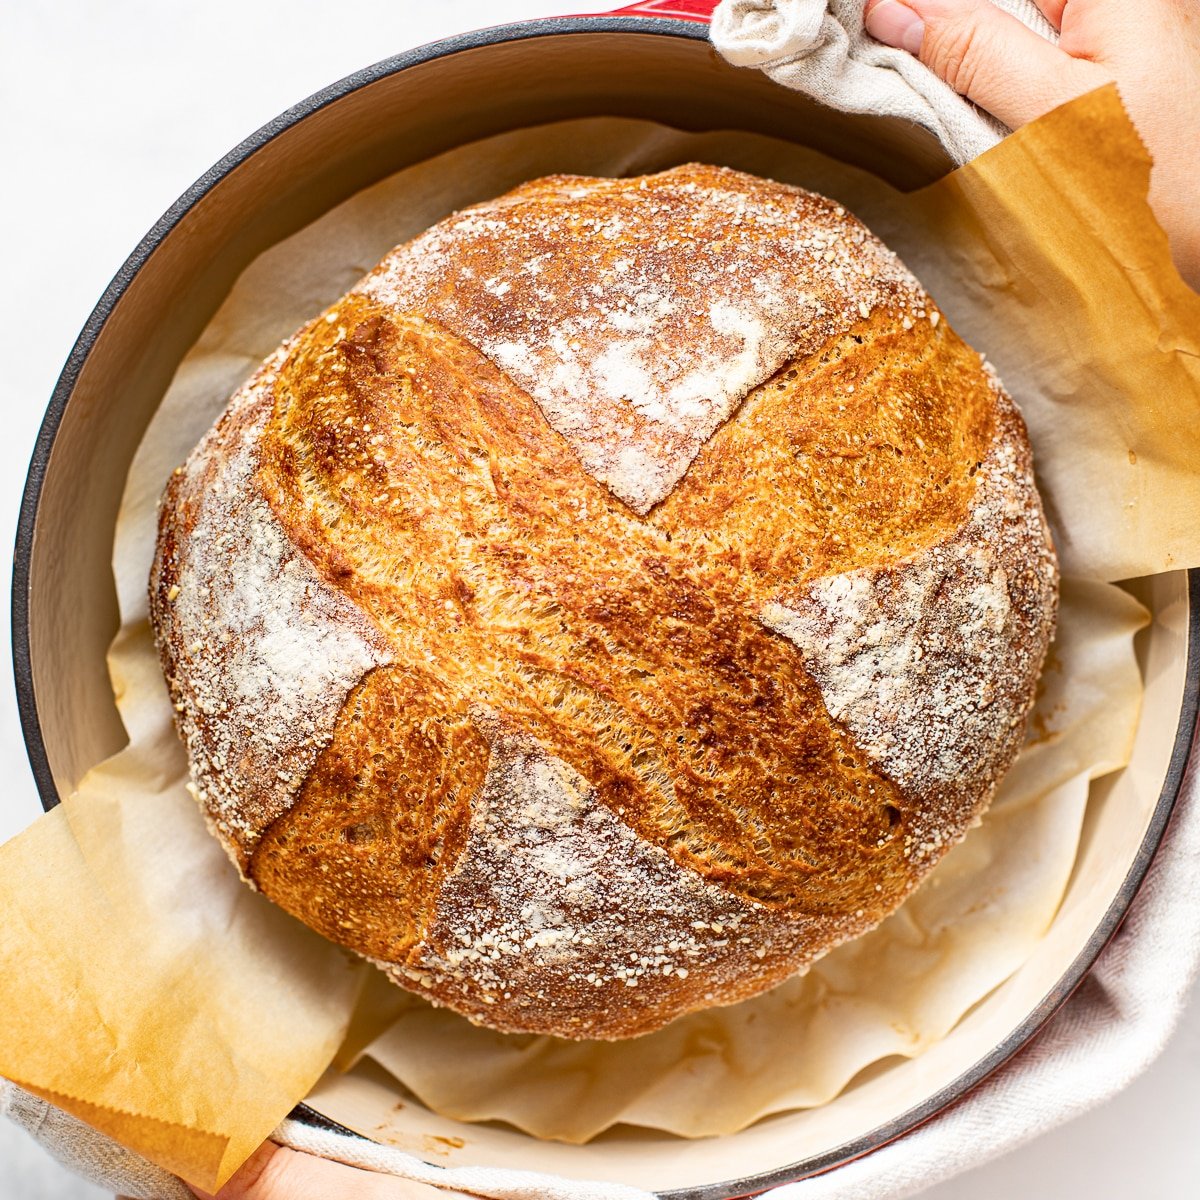 Dutch oven to bake sourdough bread : r/Sourdough